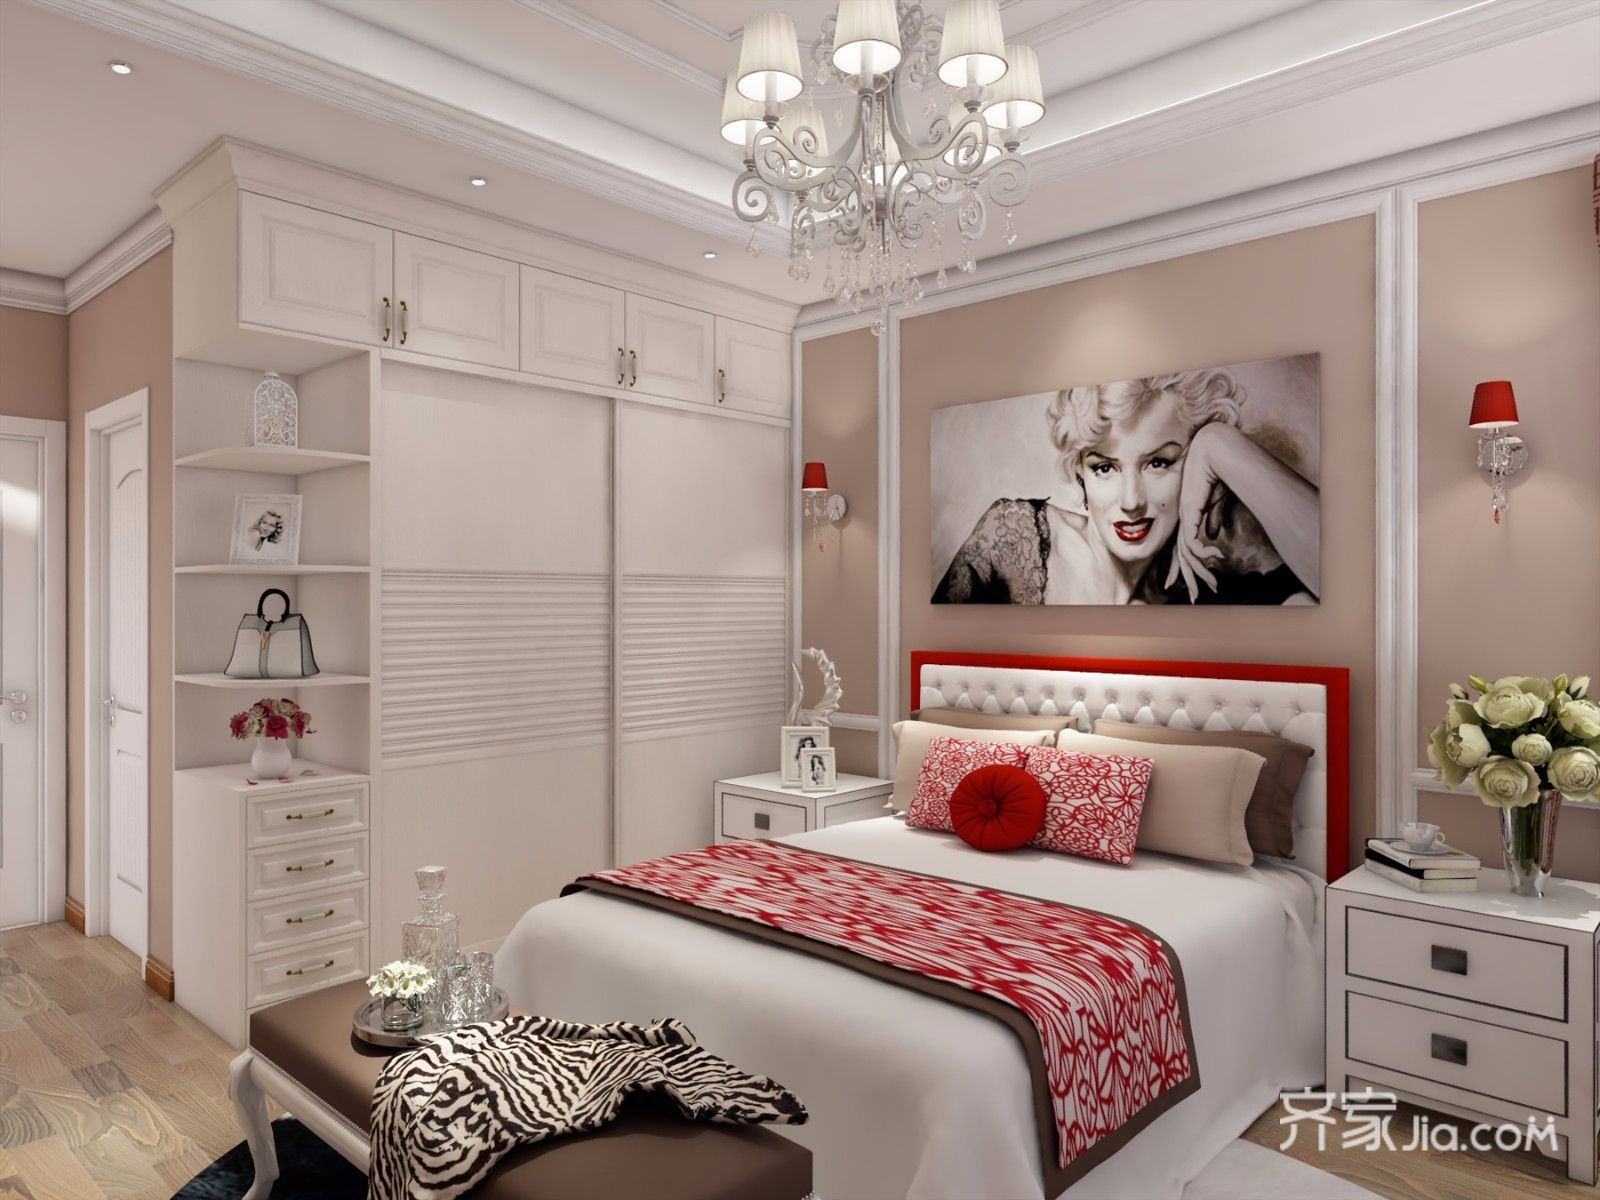 20万以上装修,二居室装修,130平米装修,美式风格,卧室,衣柜,卧室背景墙,床上用品,红色,白色